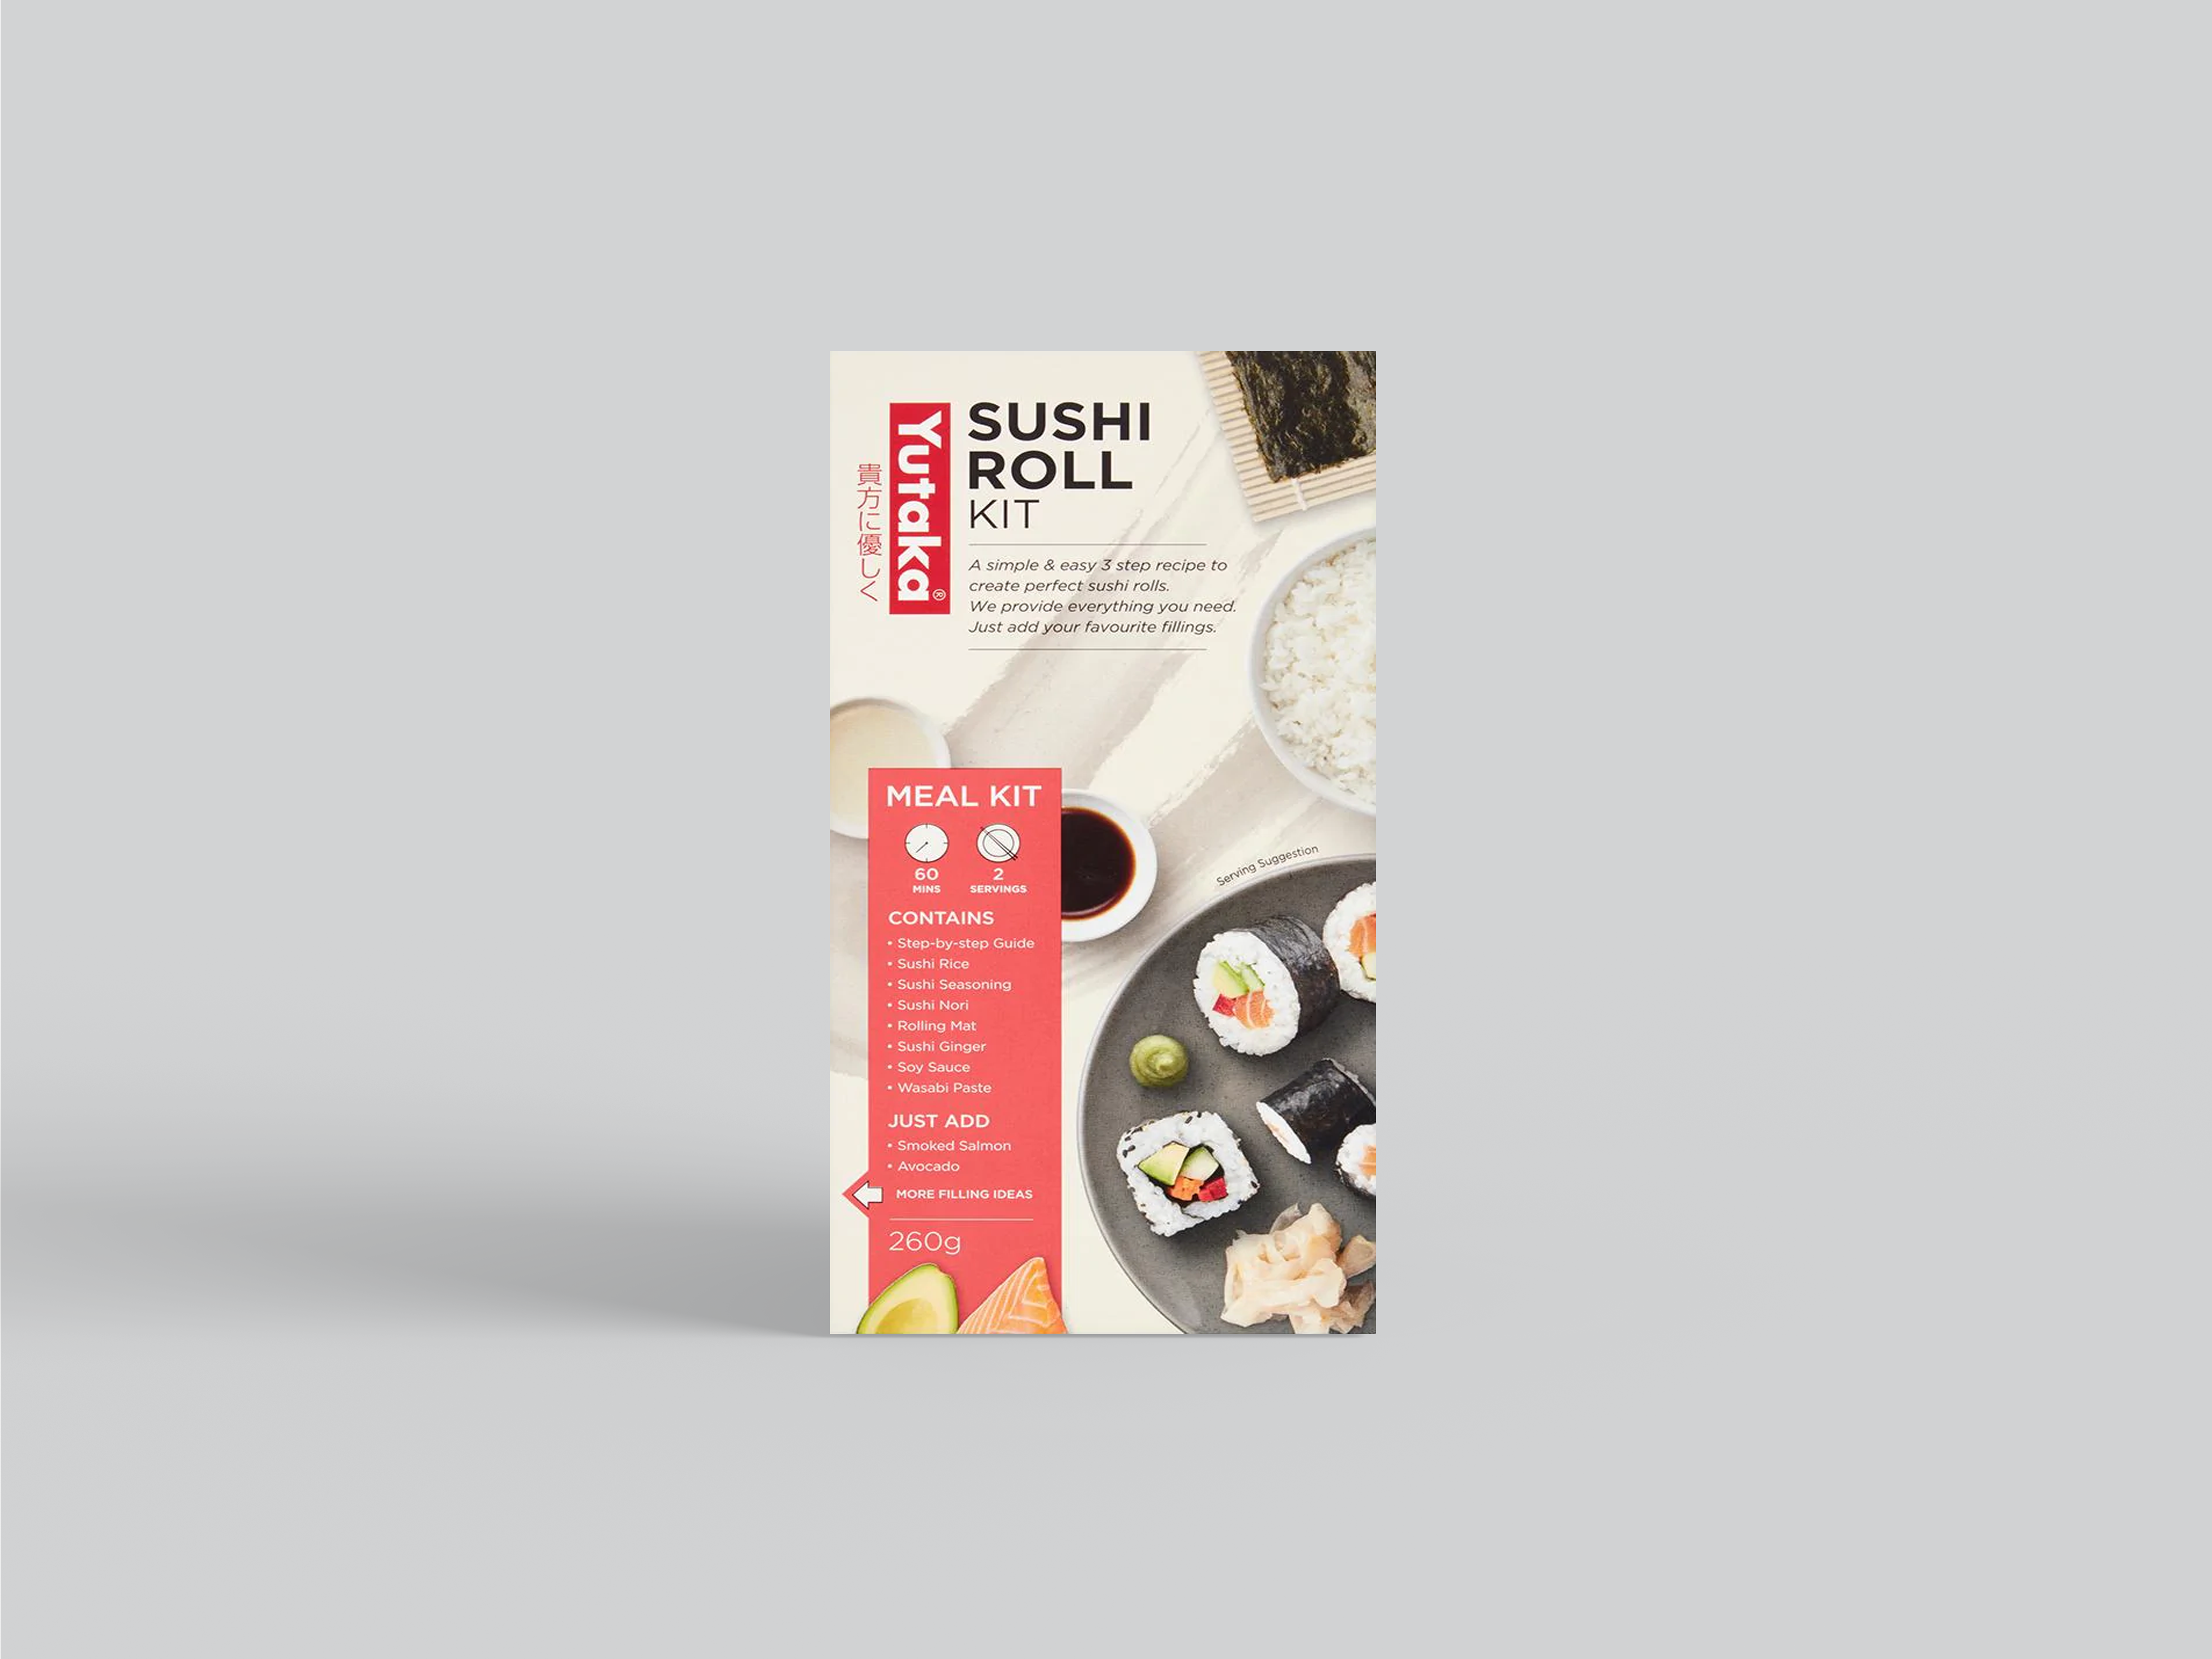 Sushi Roll Kit 260g (Serves 2)